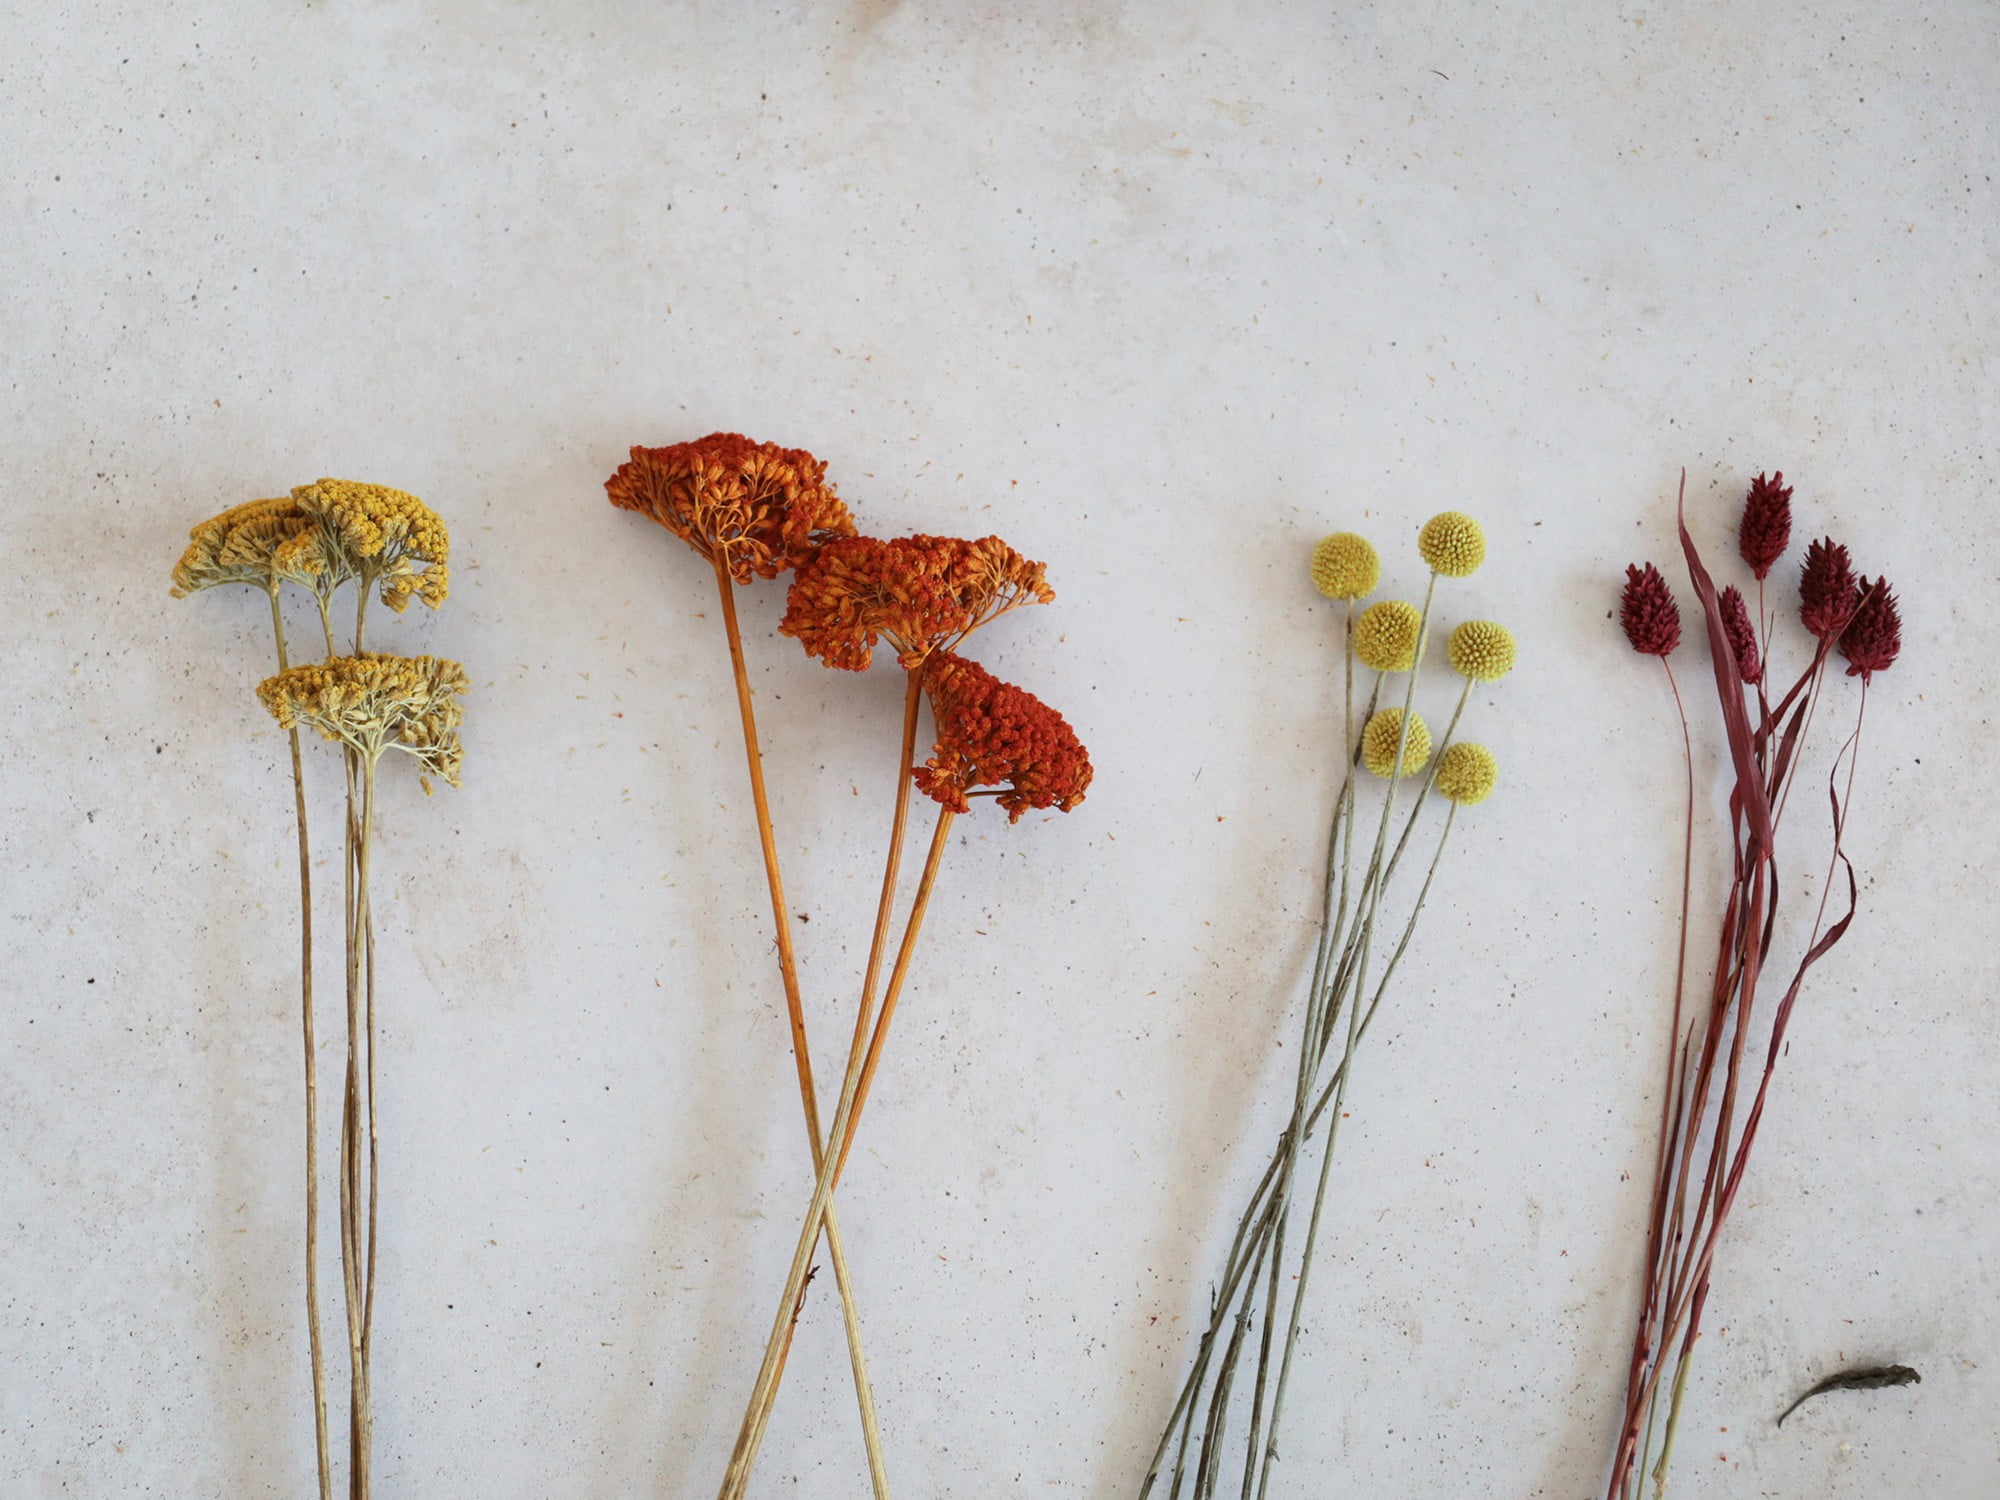 Otiđite u cvjećarnicu gdje možete nabaviti obojeno suho cvijeće